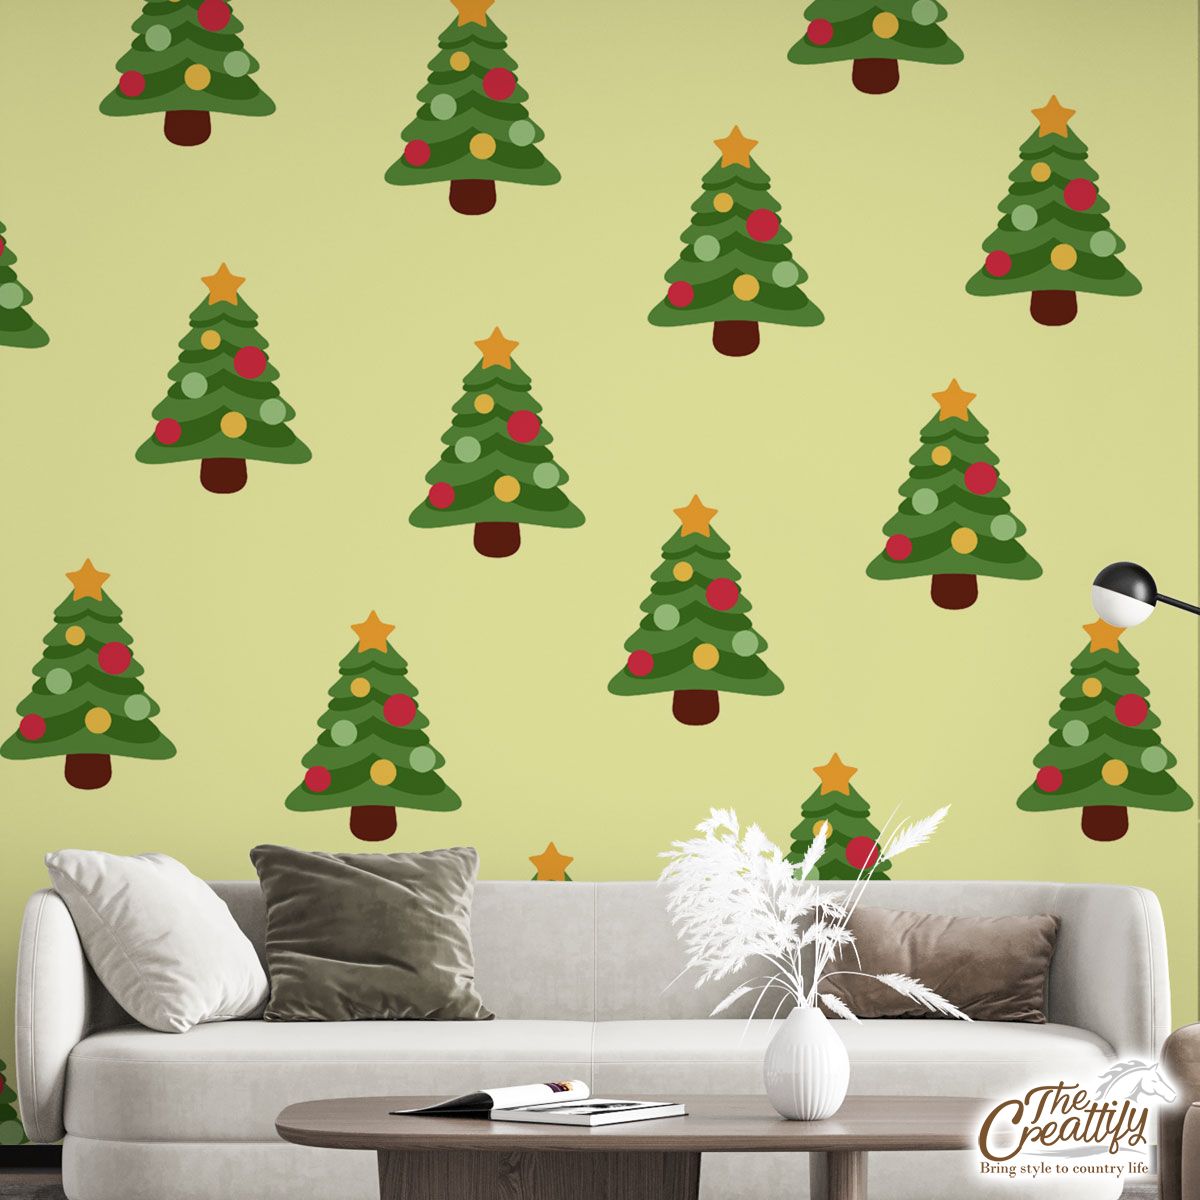 Christmas Tree, Pine Tree, Christmas Balls Wall Mural